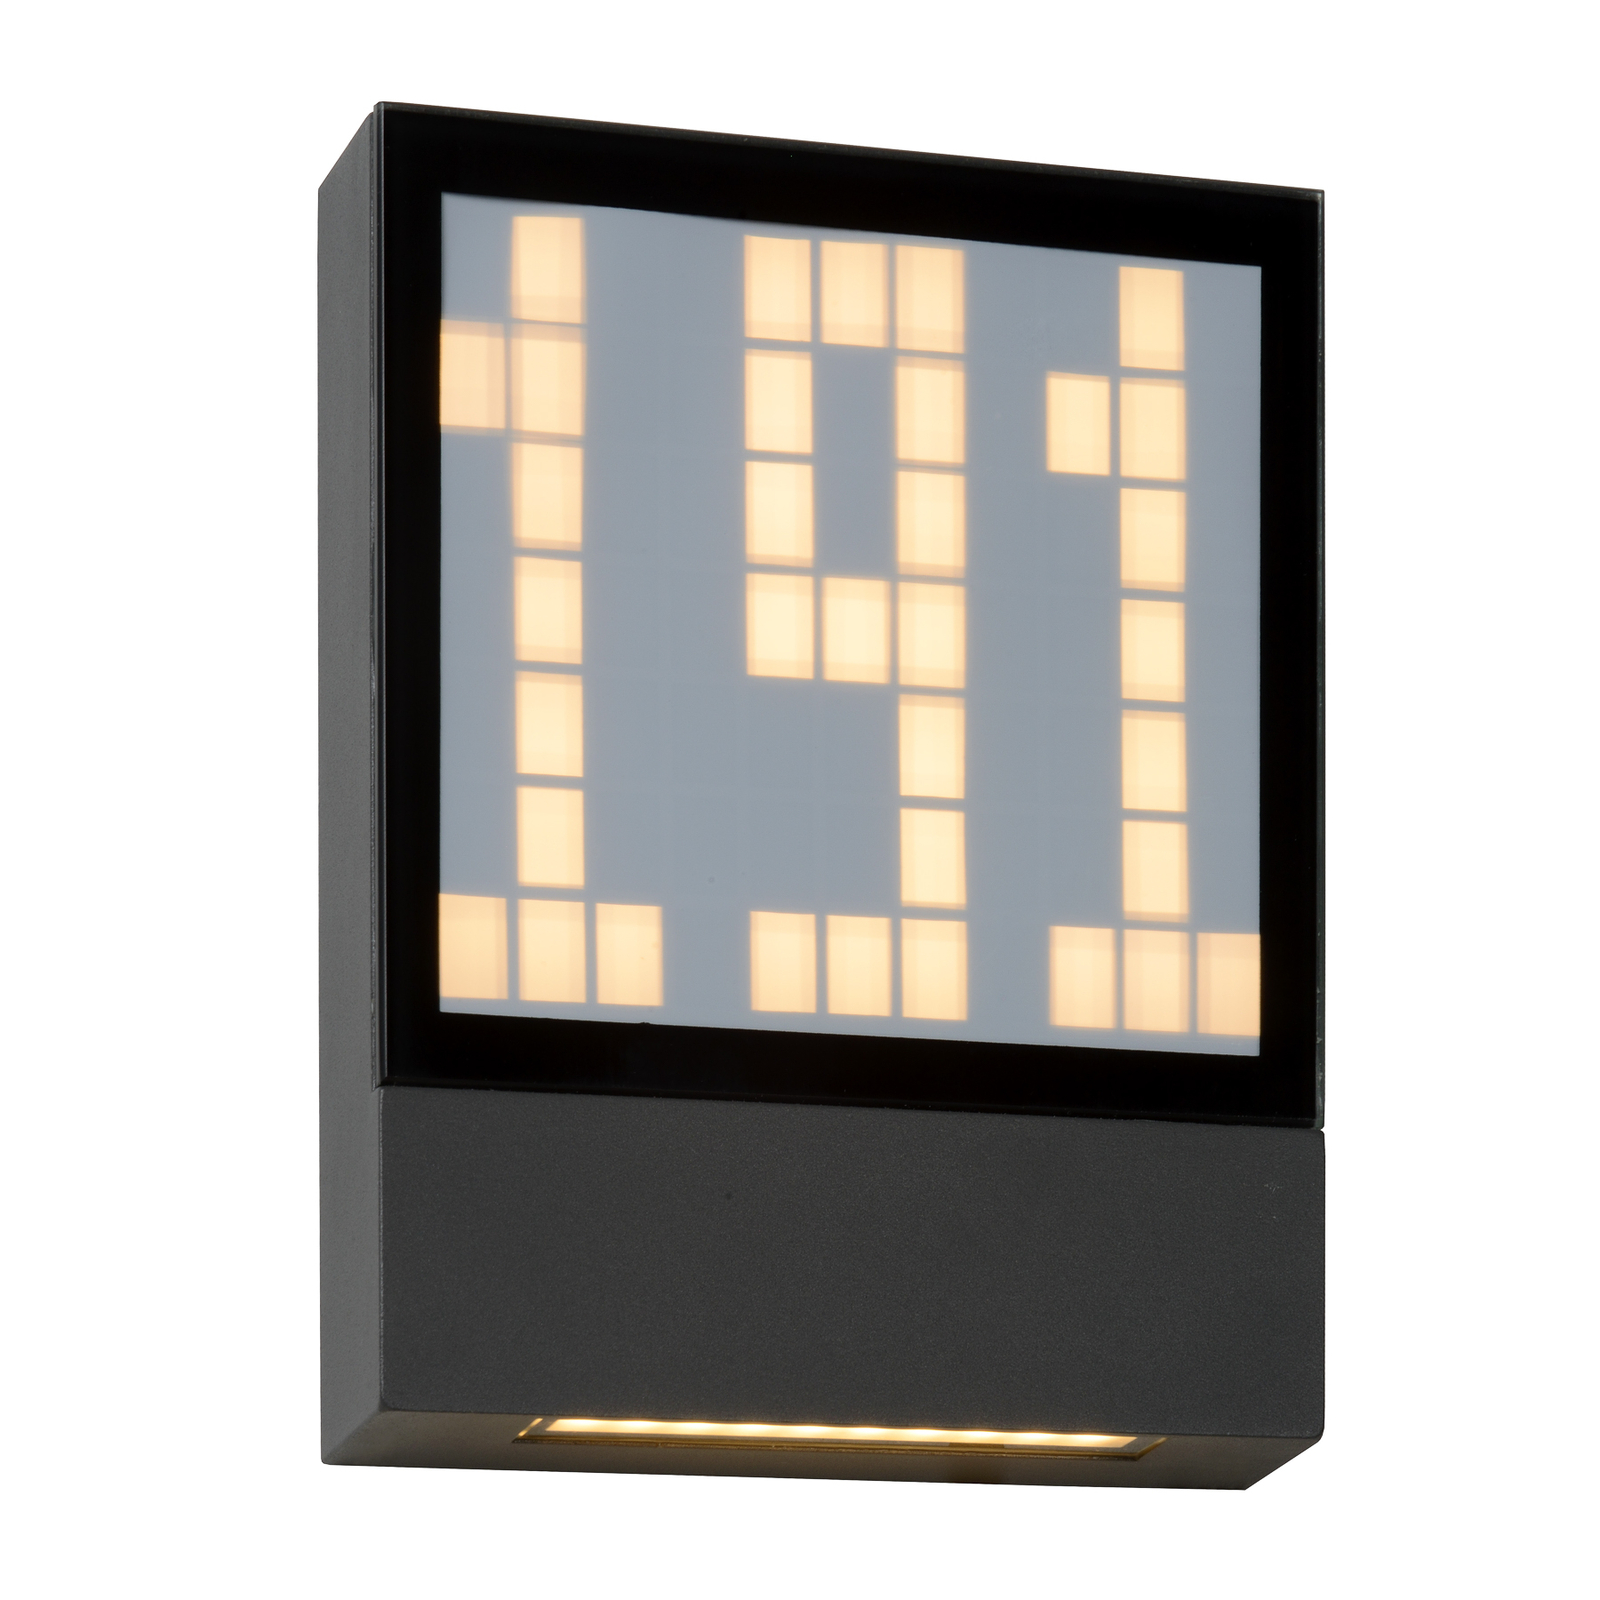 Digit LED house number light, digital display